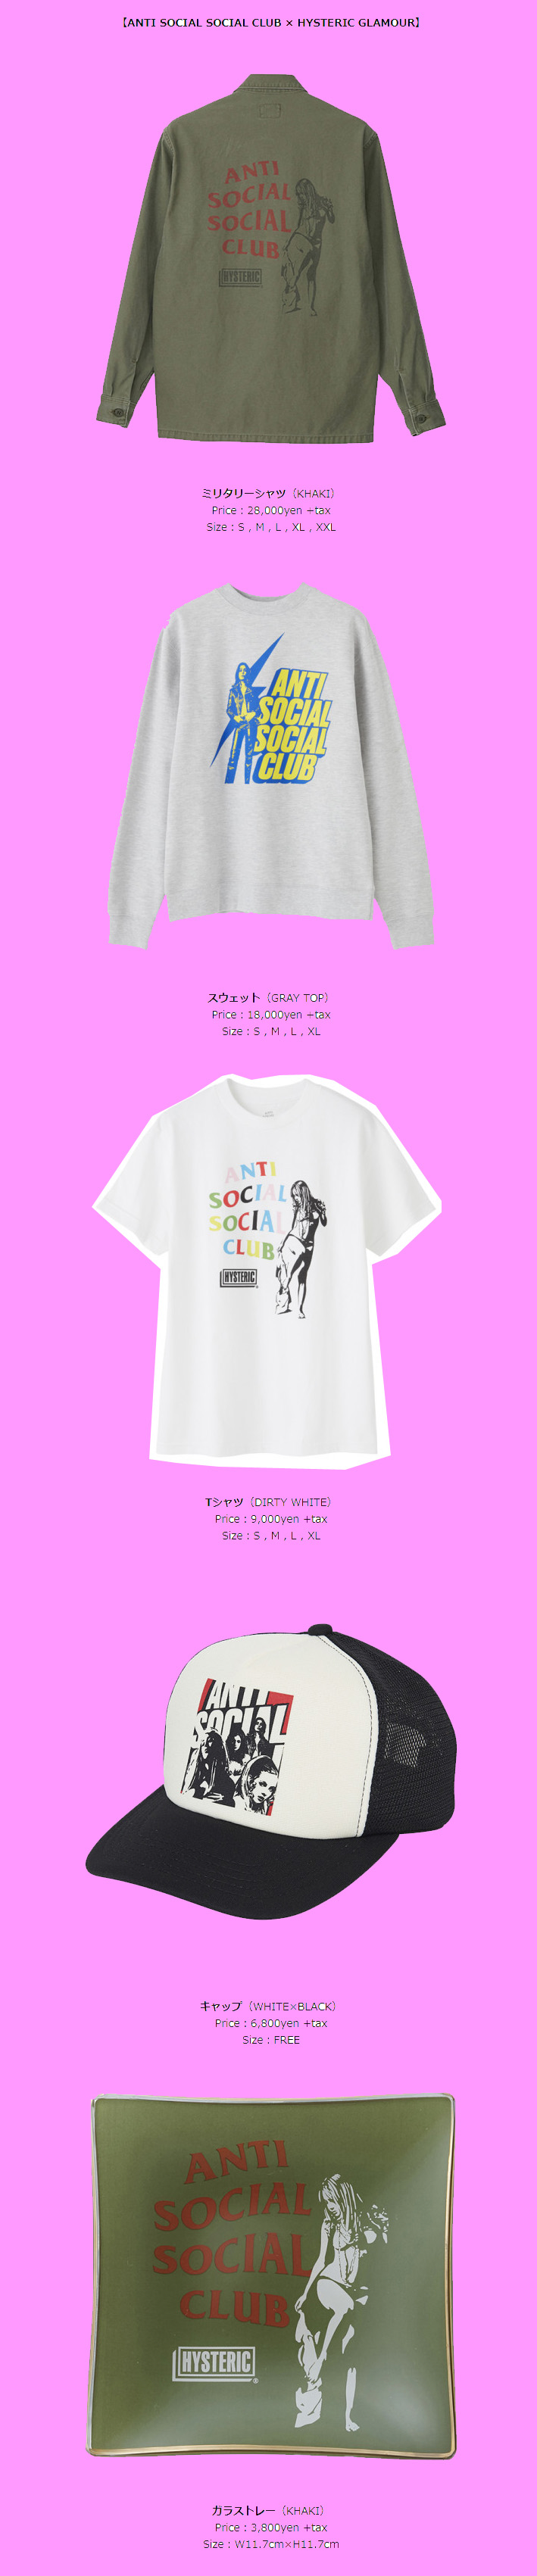 3月28日 (日本時間 23:59)発売開始 anti social social club 2020SS第1 